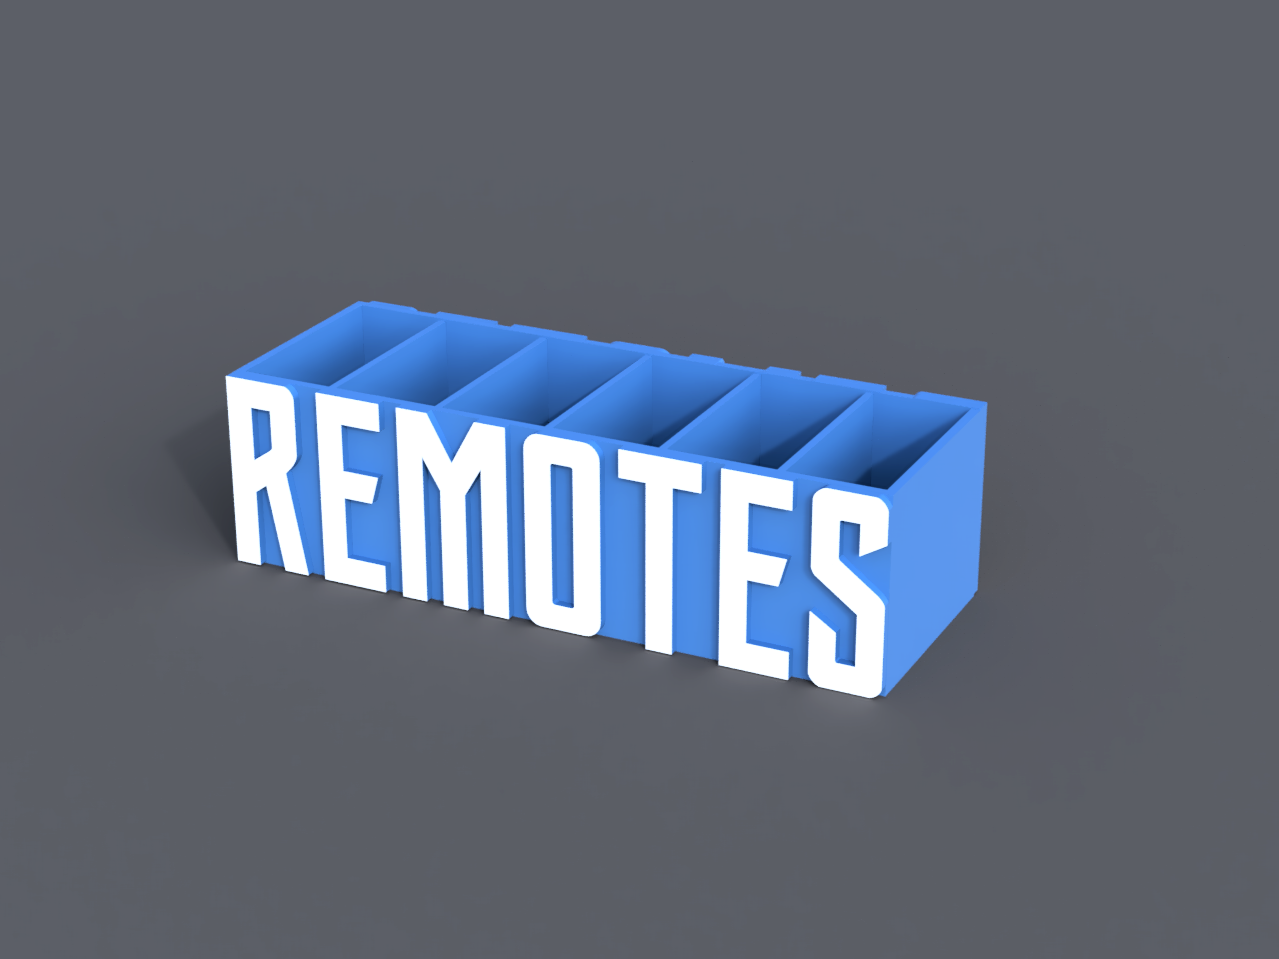 'Remote' Remote Stand